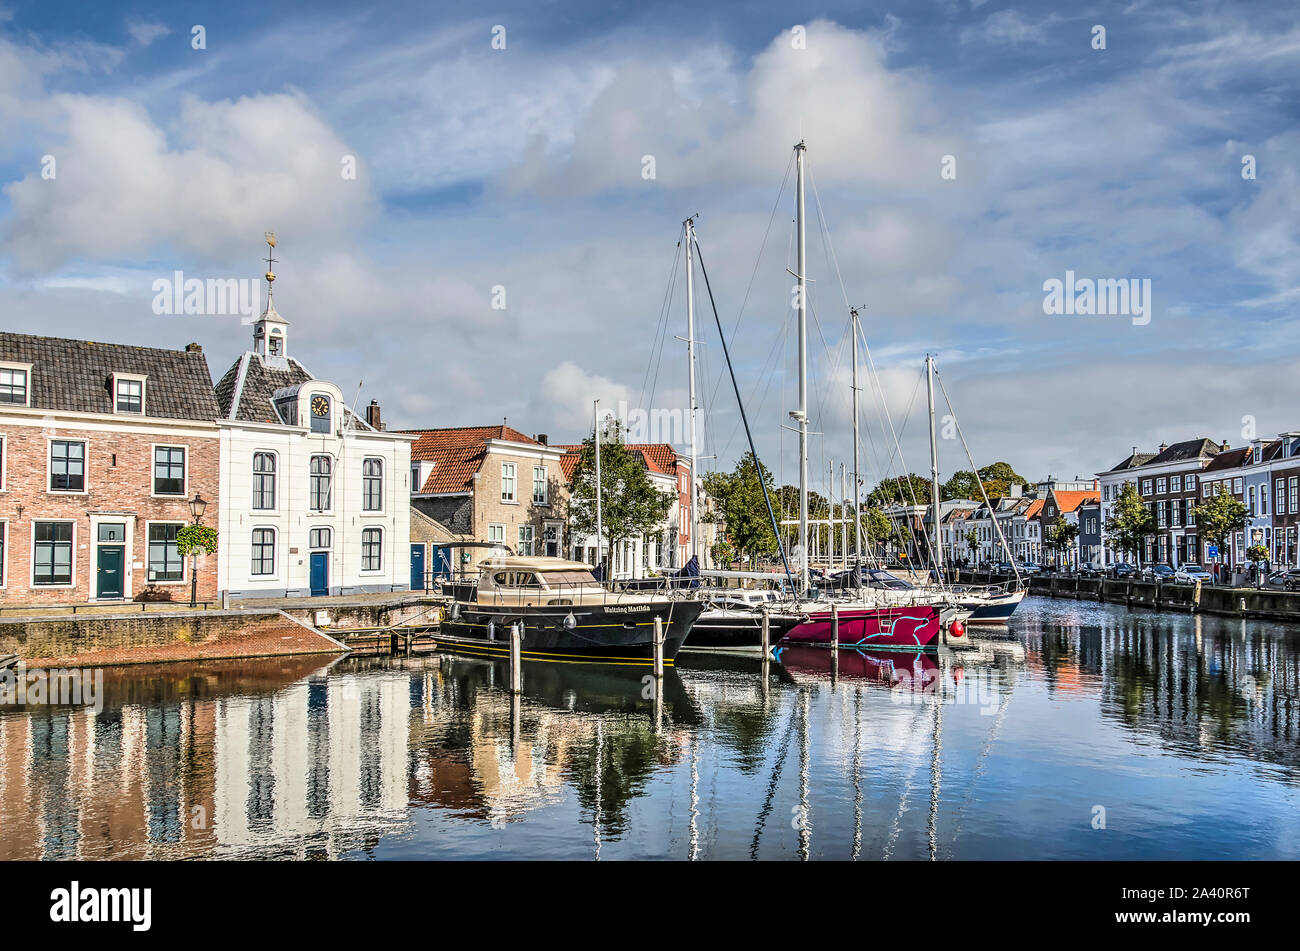 Va, les Pays-Bas, le 9 octobre 2019 : vue depuis le sud-ouest le long de l'eau réfléchissante du port de la vieille ville avec ses maisons historiques et moder Banque D'Images